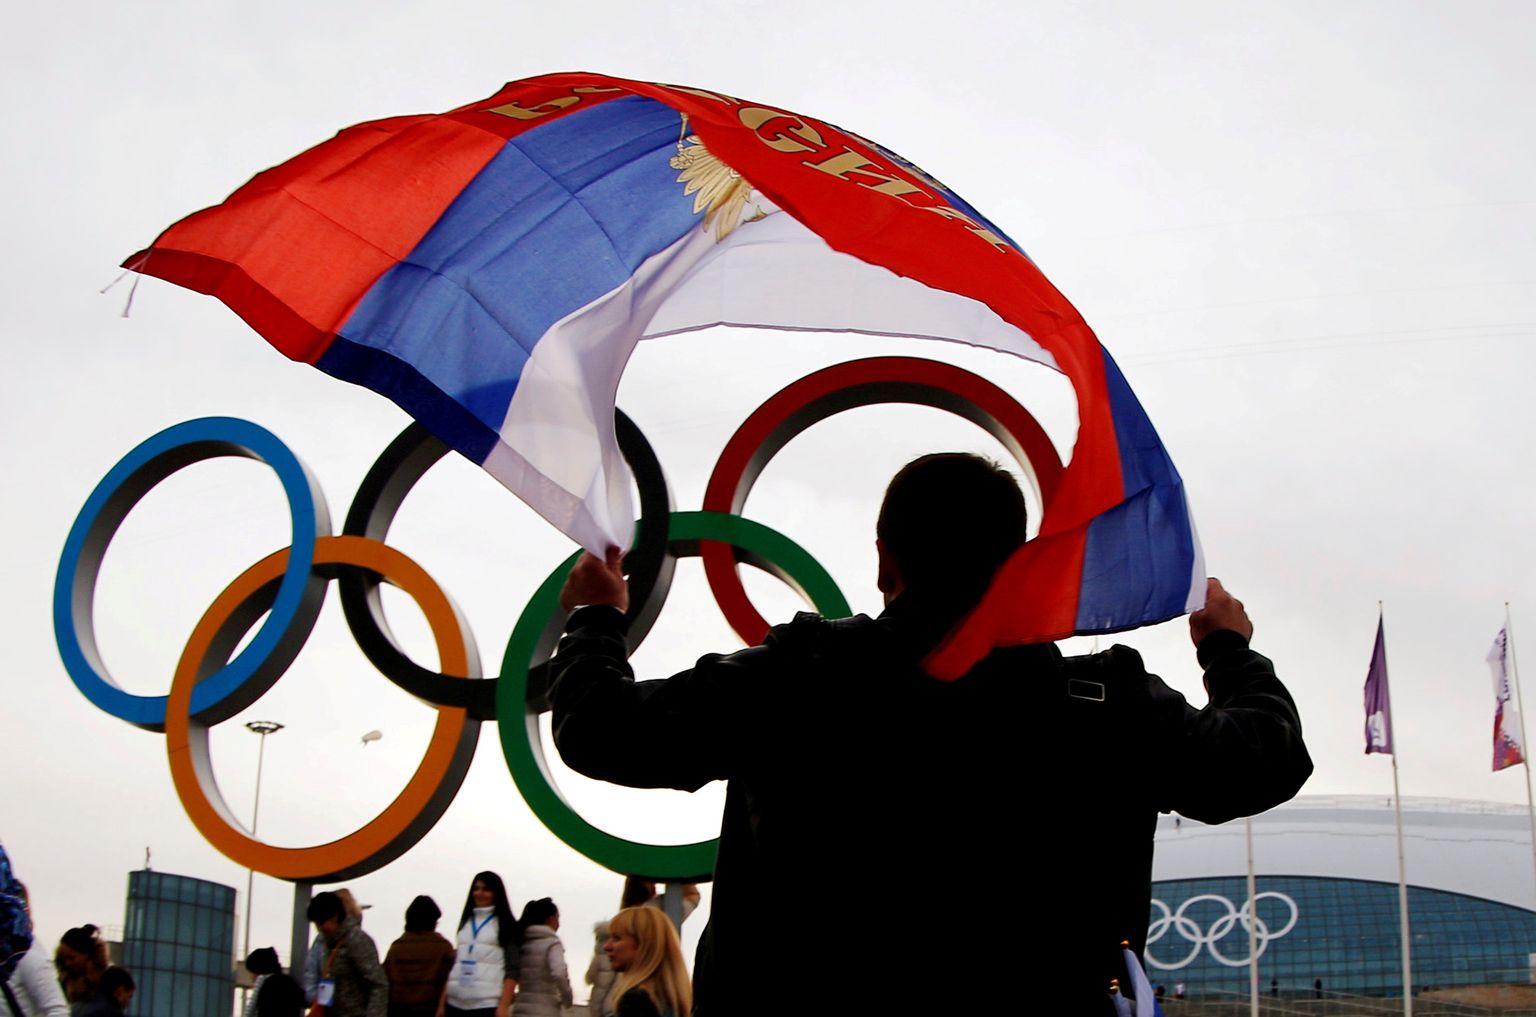 Venemaa sportlased pole viimasel kolmel olümpial saanud oma riigi lipu all võistelda. Pärast sõja alustamist Ukrainas ei saa aga enamik Venemaa sportlasi üldse rahvusvahelistel võistlustel osaleda.